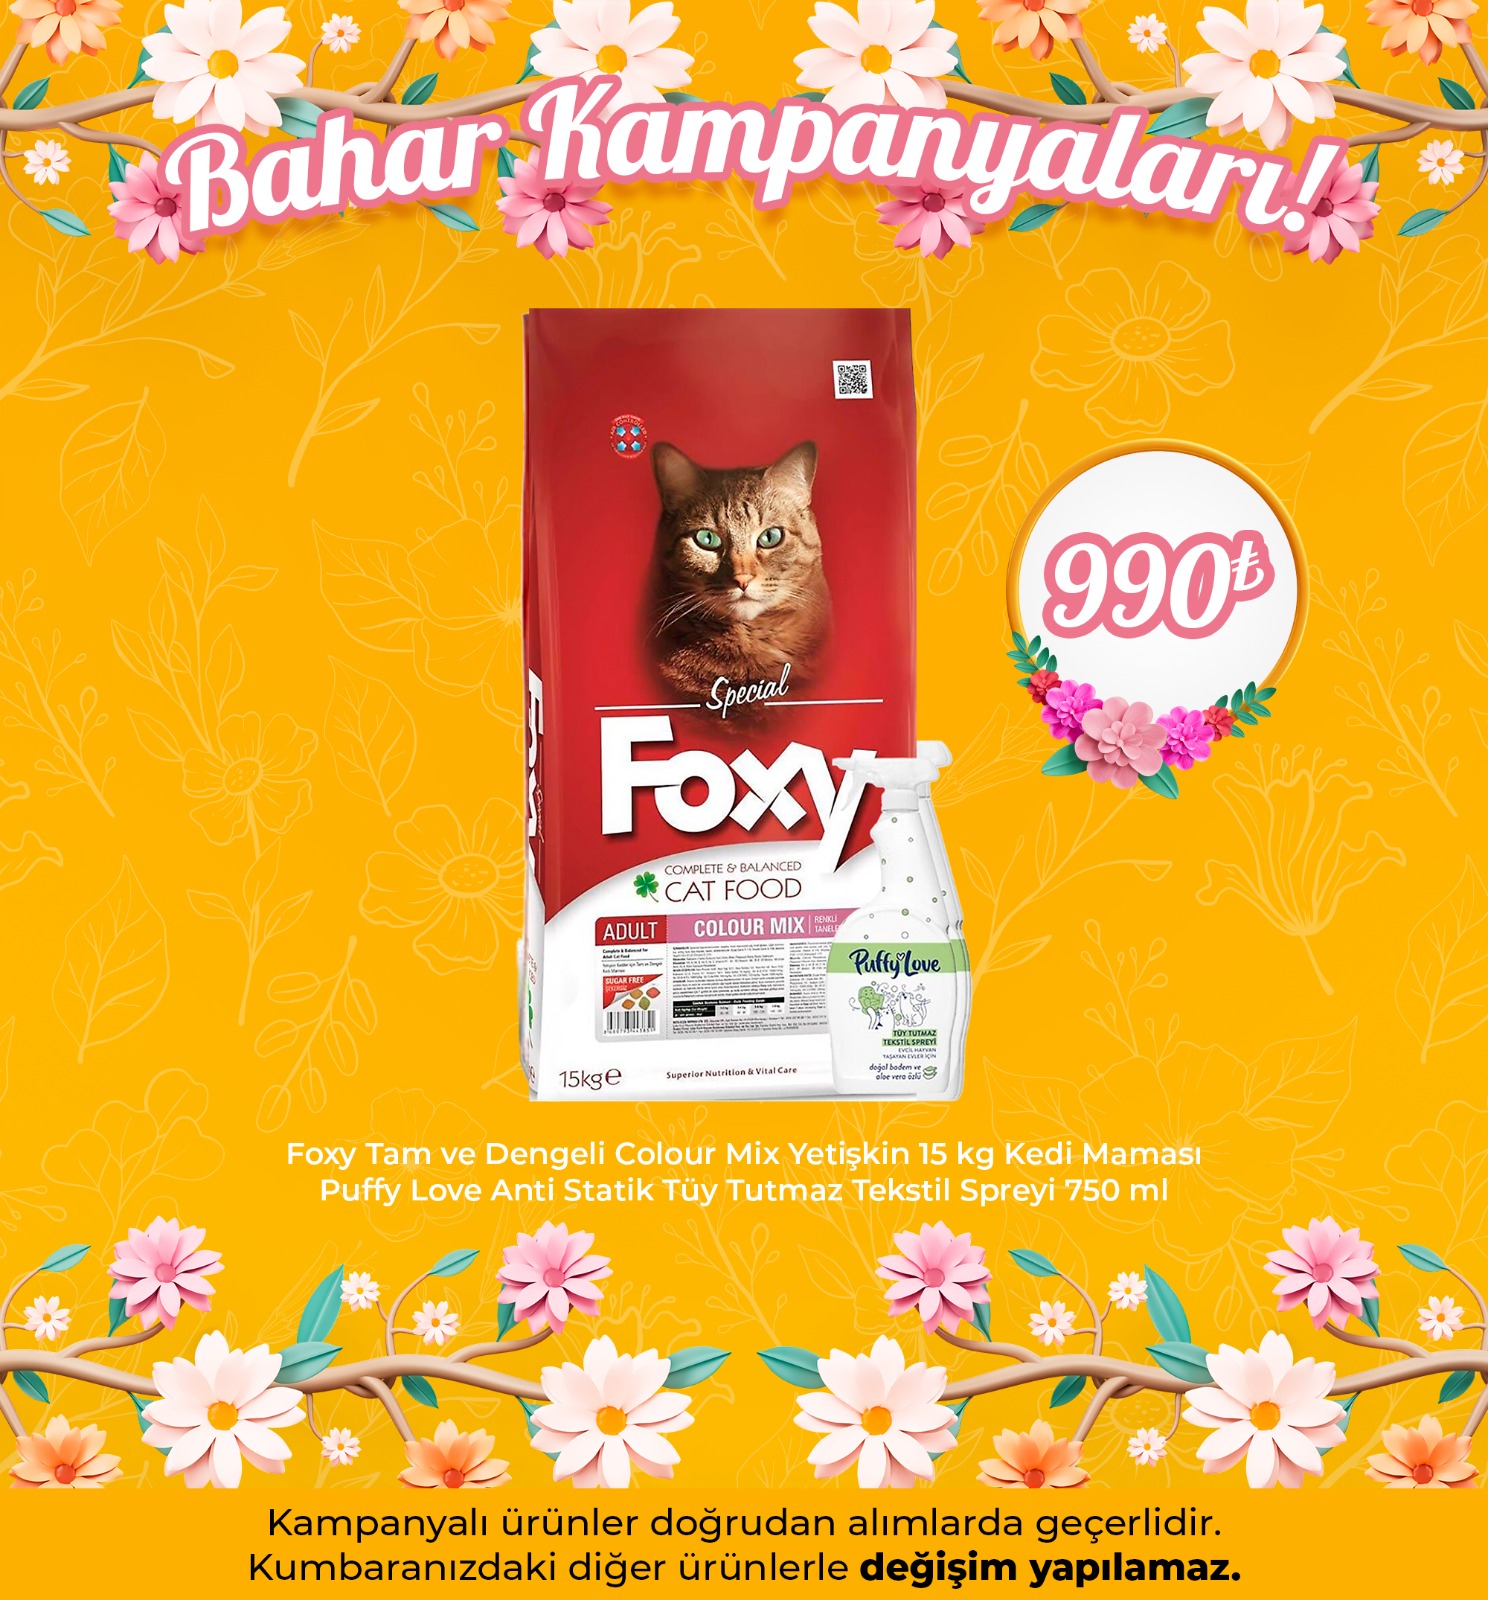 Foxy Tam ve Dengeli Colour Mix Yetişkin 15 kg Kedi Maması + Puffy Love Anti Statik Tüy Tutmaz Tekstil Spreyi 750 ml